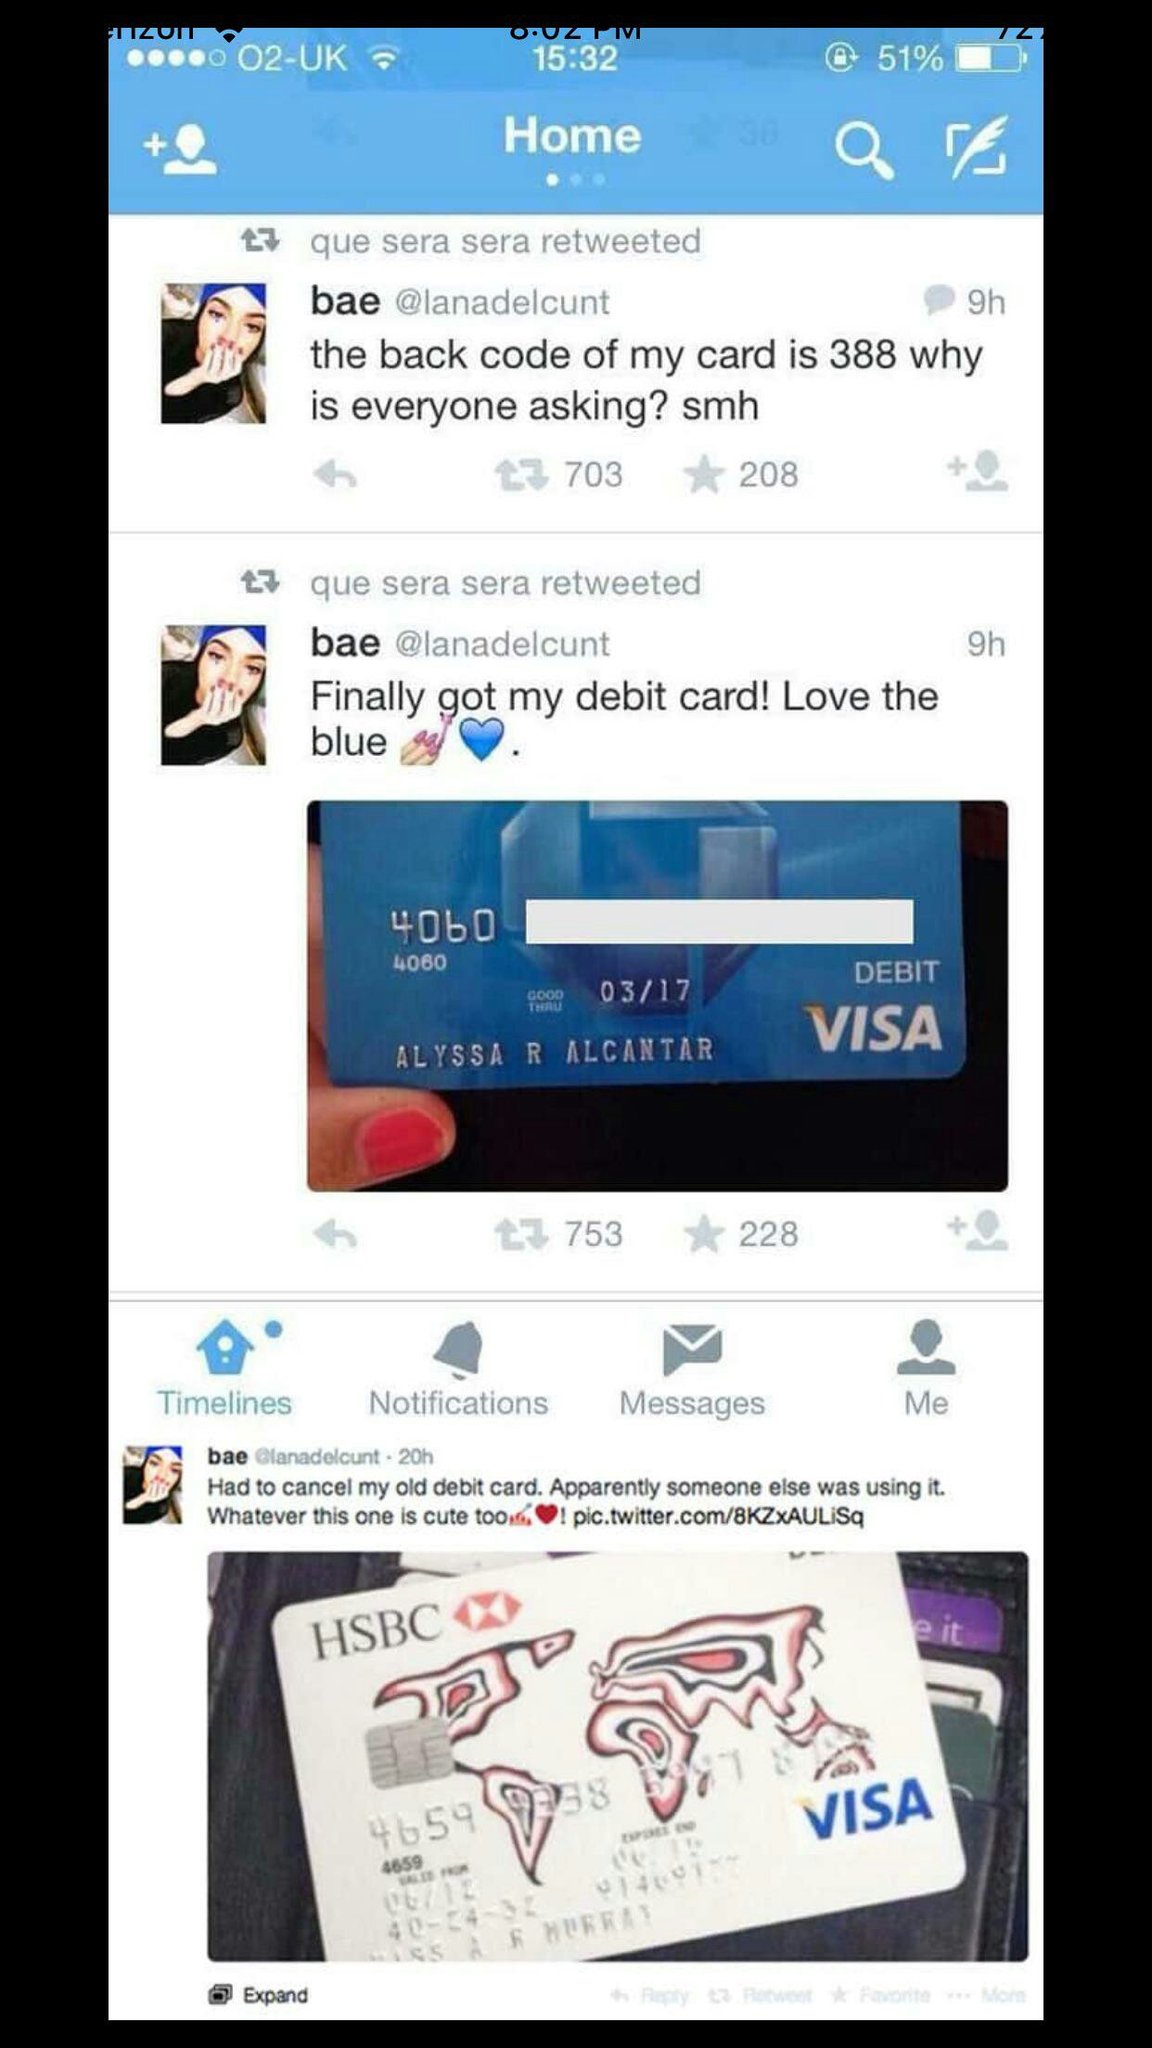 "Finalmente consegui meu cartão de débito" "tive que cancelar, alguém tava usando, mas esse tbm eh fofo" - meme